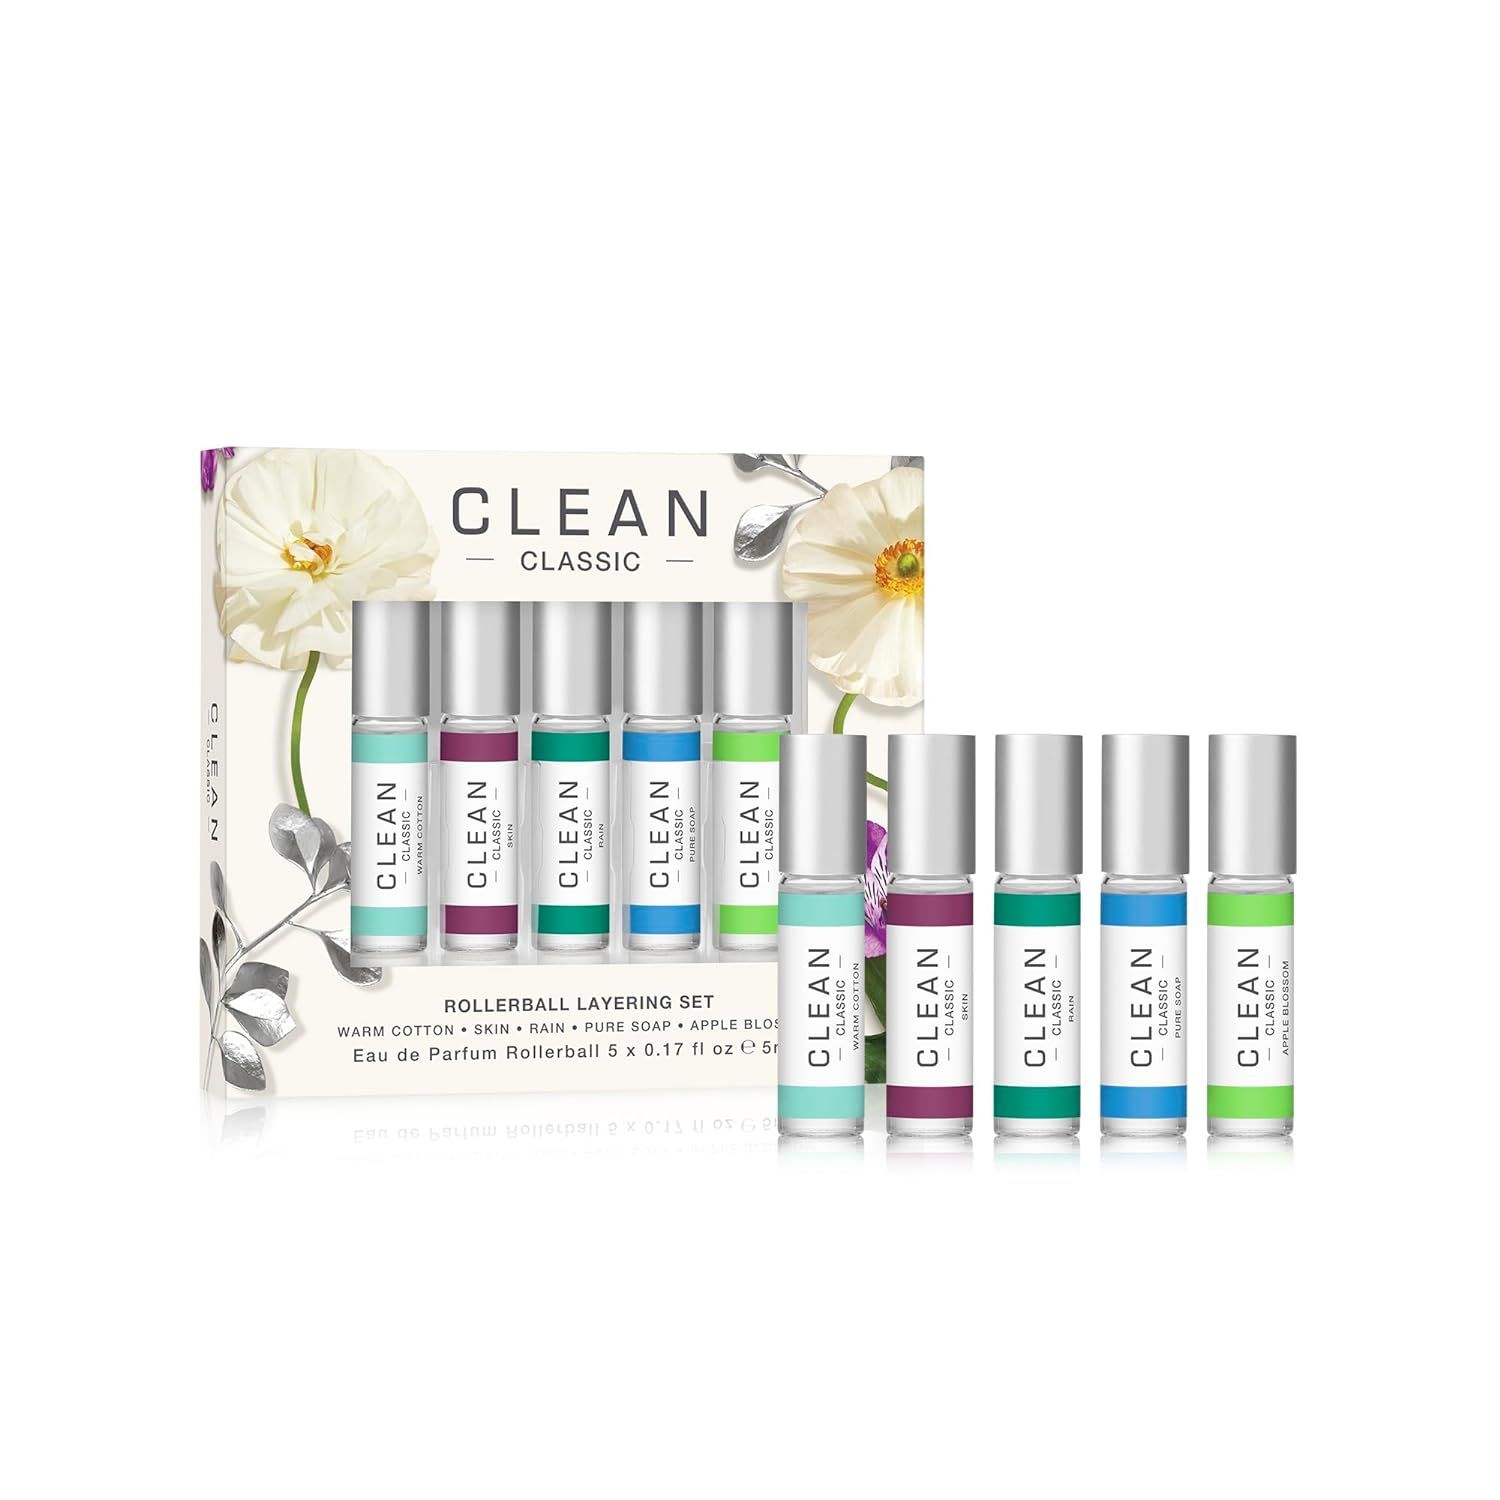 CLEAN CLASSIC Eau de Parfum Rollerball Fragrance Gift Set | Light, Layerable Fragrance | Vegan, P... | Amazon (US)